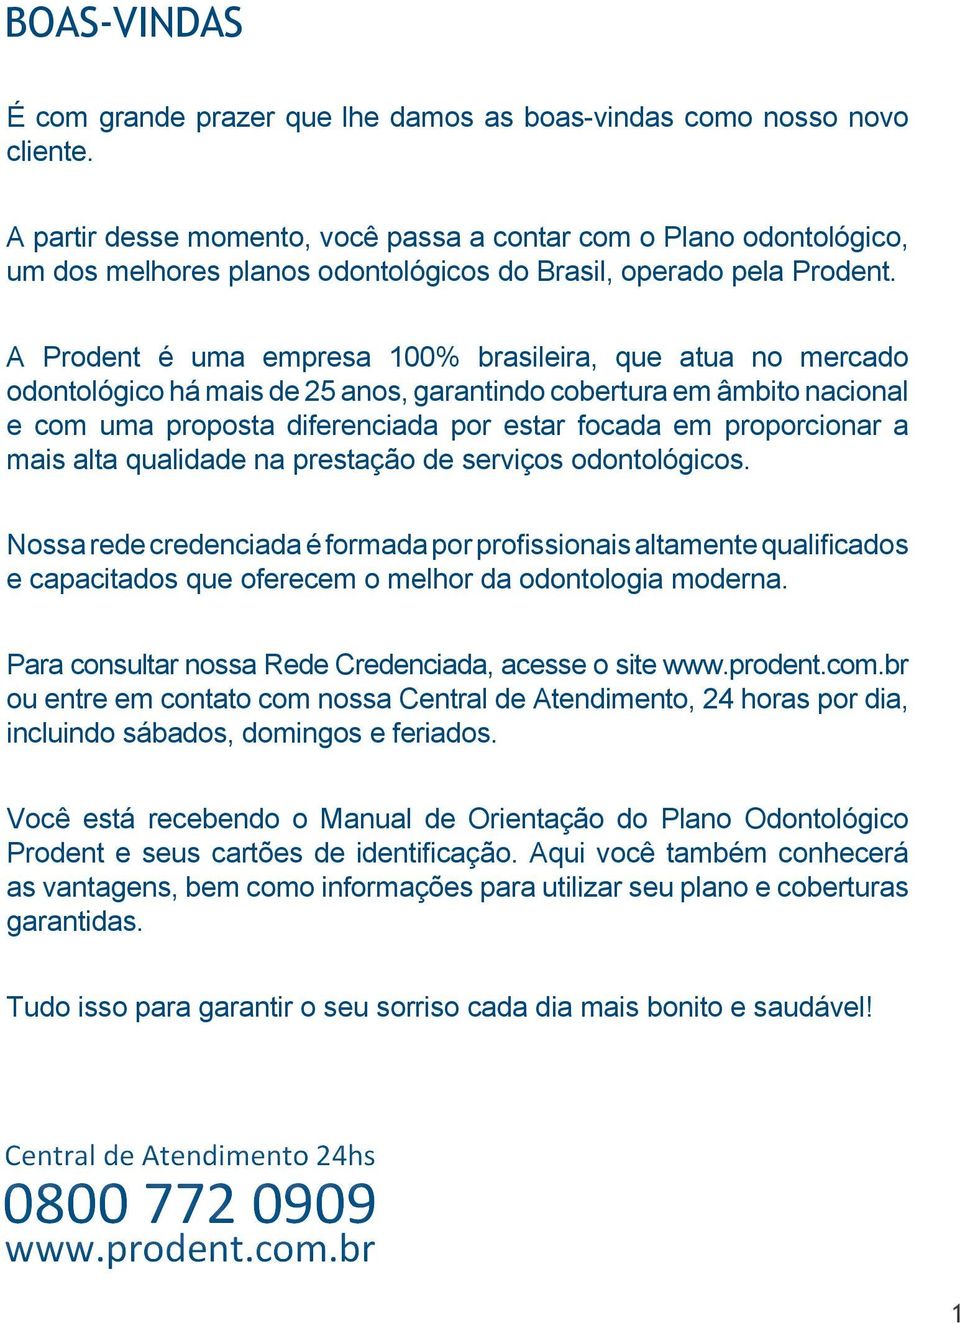 A Prodent é uma empresa 100% brasileira, que atua no mercado odontológico há mais de 25 anos, garantindo cobertura em âmbito nacional e com uma proposta diferenciada por estar focada em proporcionar